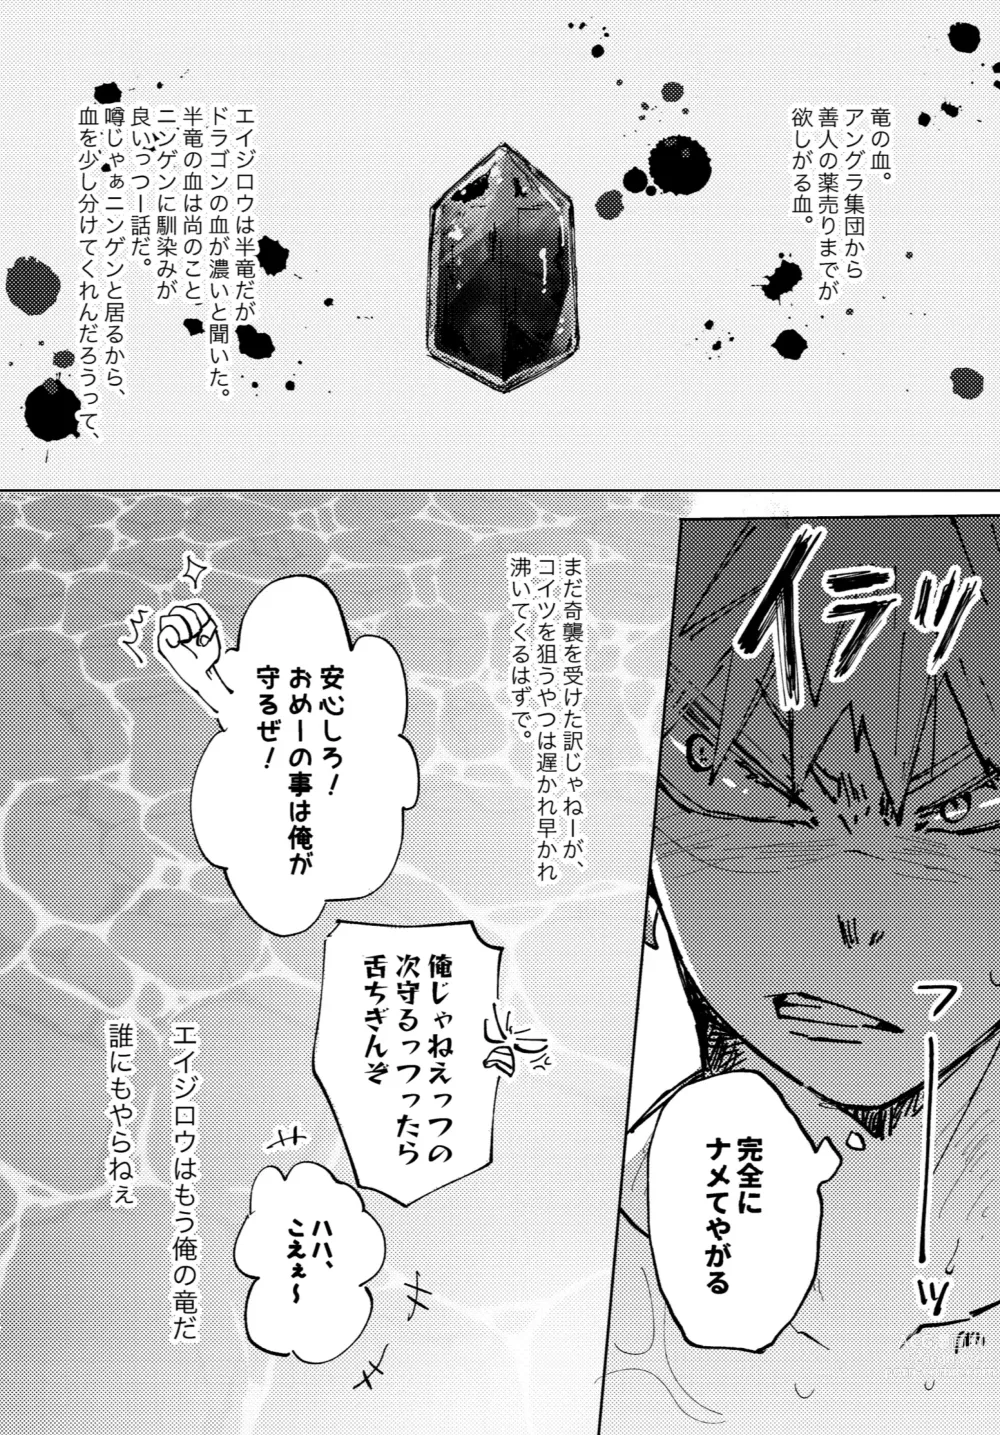 Page 6 of doujinshi Futatsu no Inochi